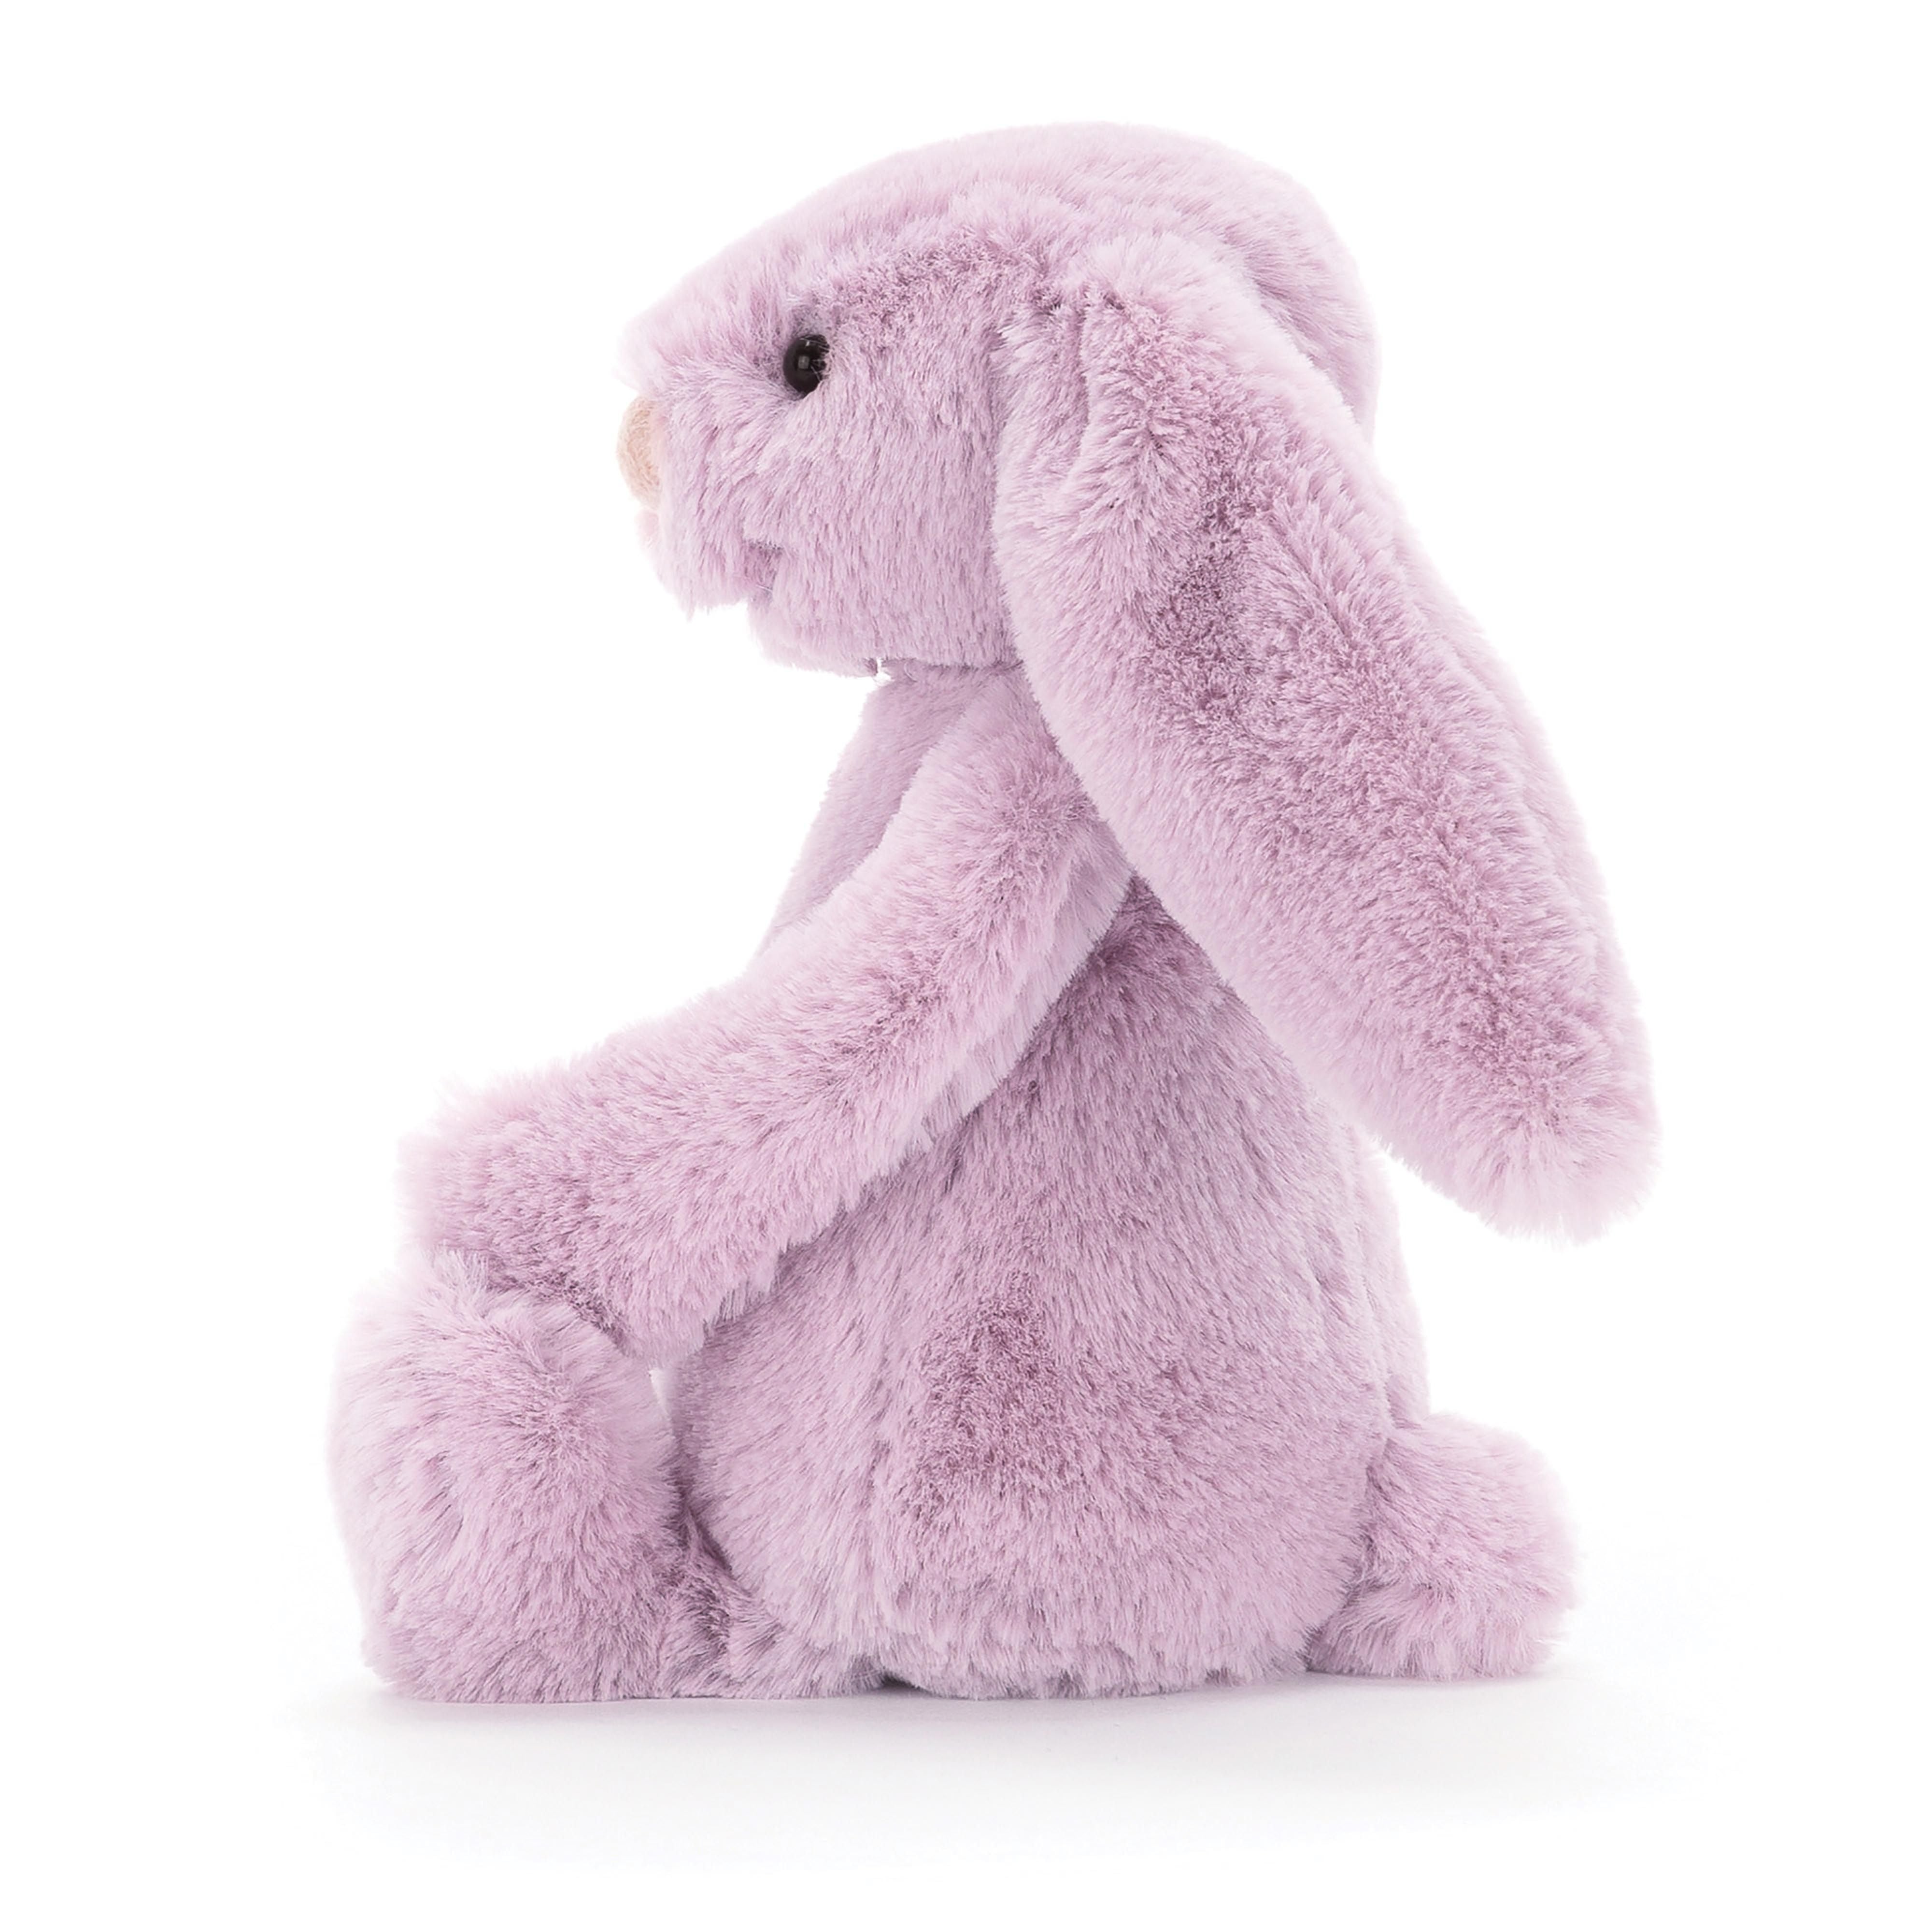 害羞的紫丁香兔子 - 小